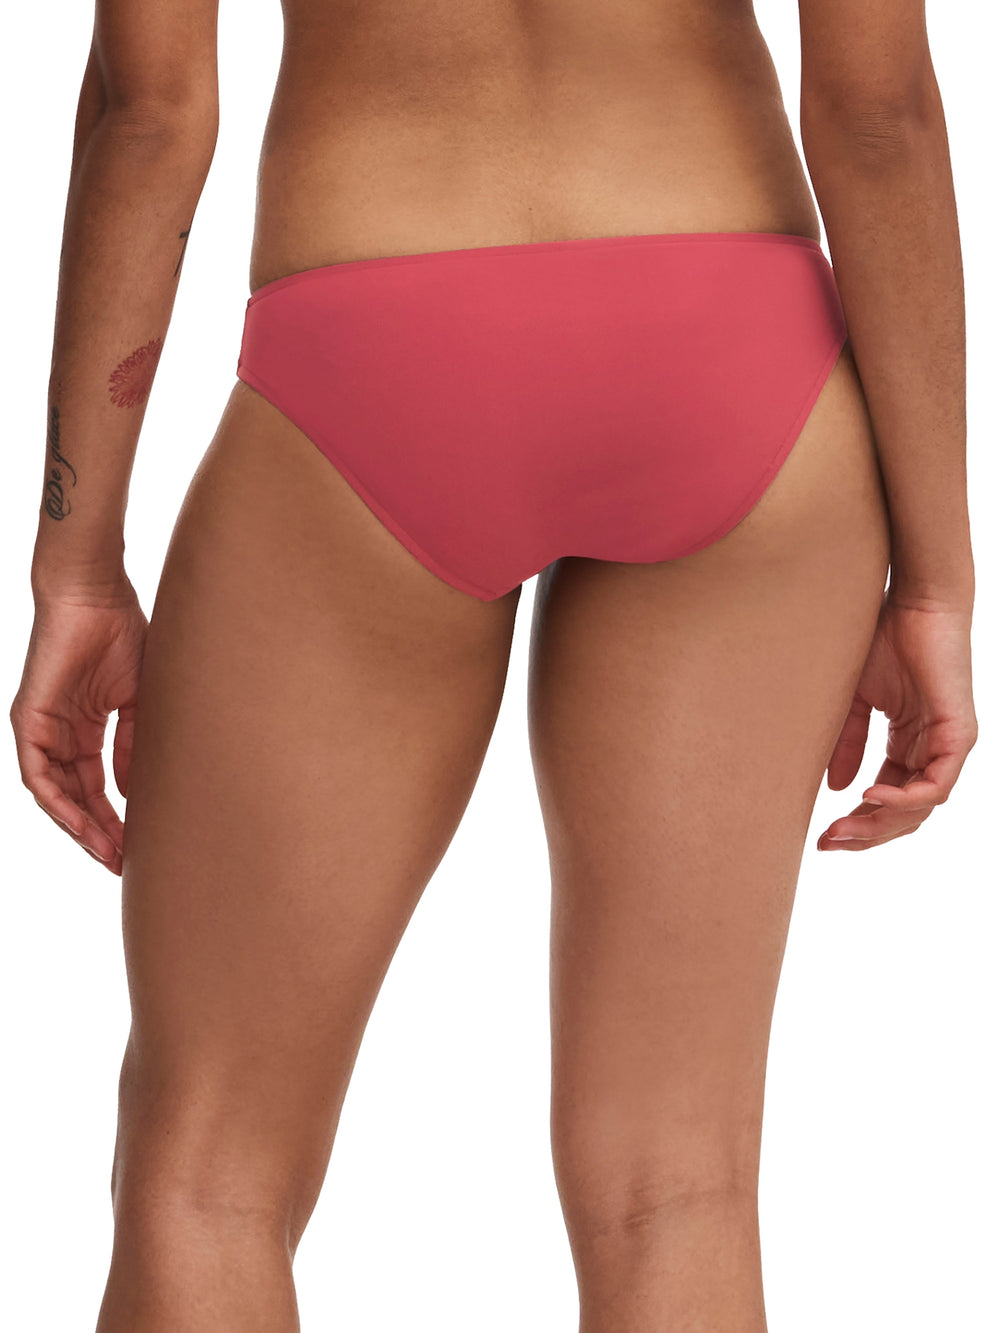 Chantelle Swimwear Inspire Brief - Braguita de bikini rojo granate Chantelle